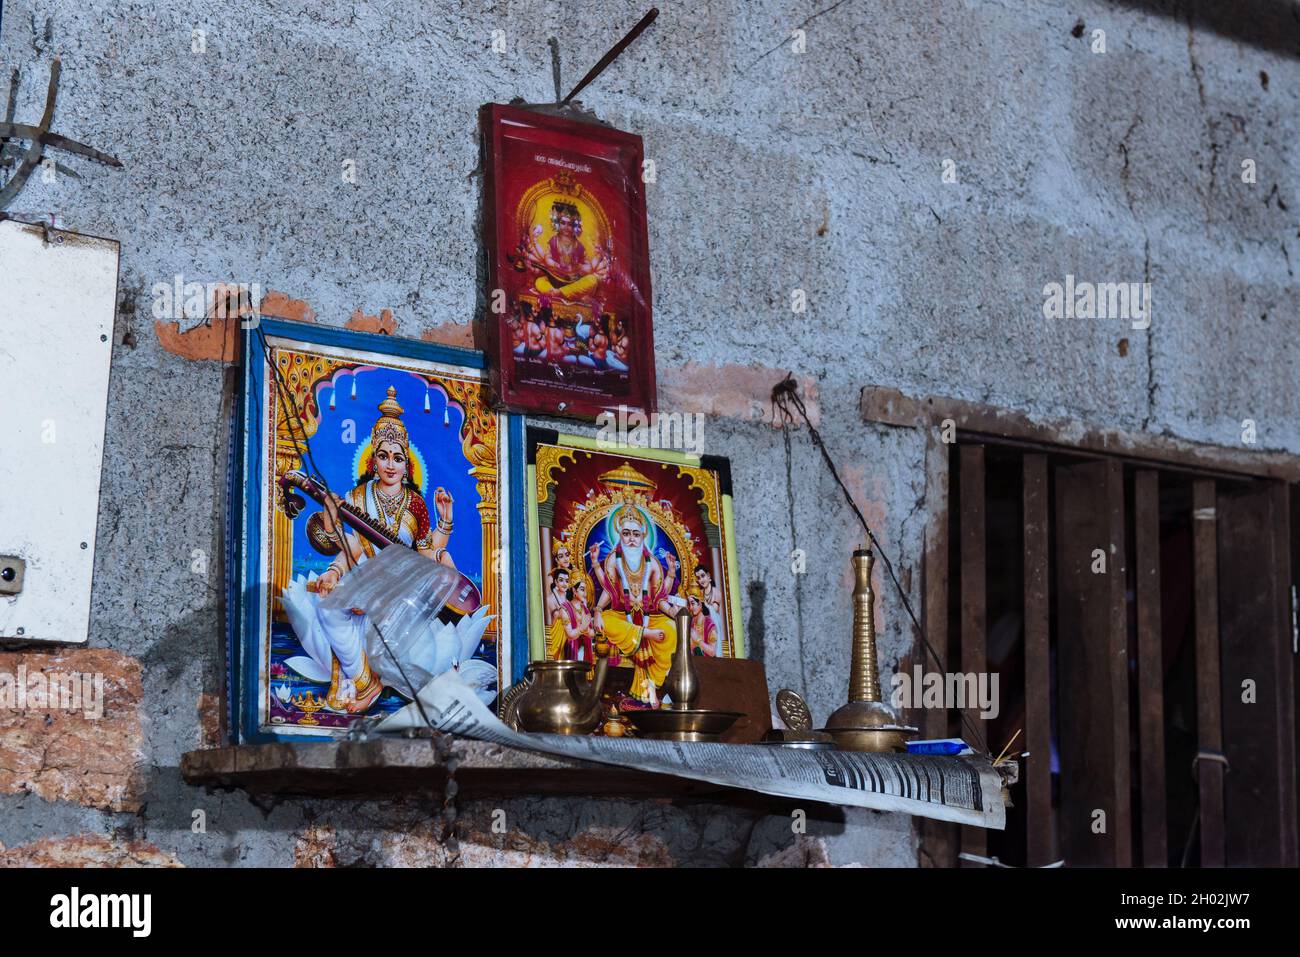 Aranmula, Indien - 5. Dezember 2015: Kerala. Silber Spiegel handgemachte Produktion in ländlicher Umgebung, handgemachte einzigartige Kunstwerke. Hinduismus, Götter, Anbetung Stockfoto